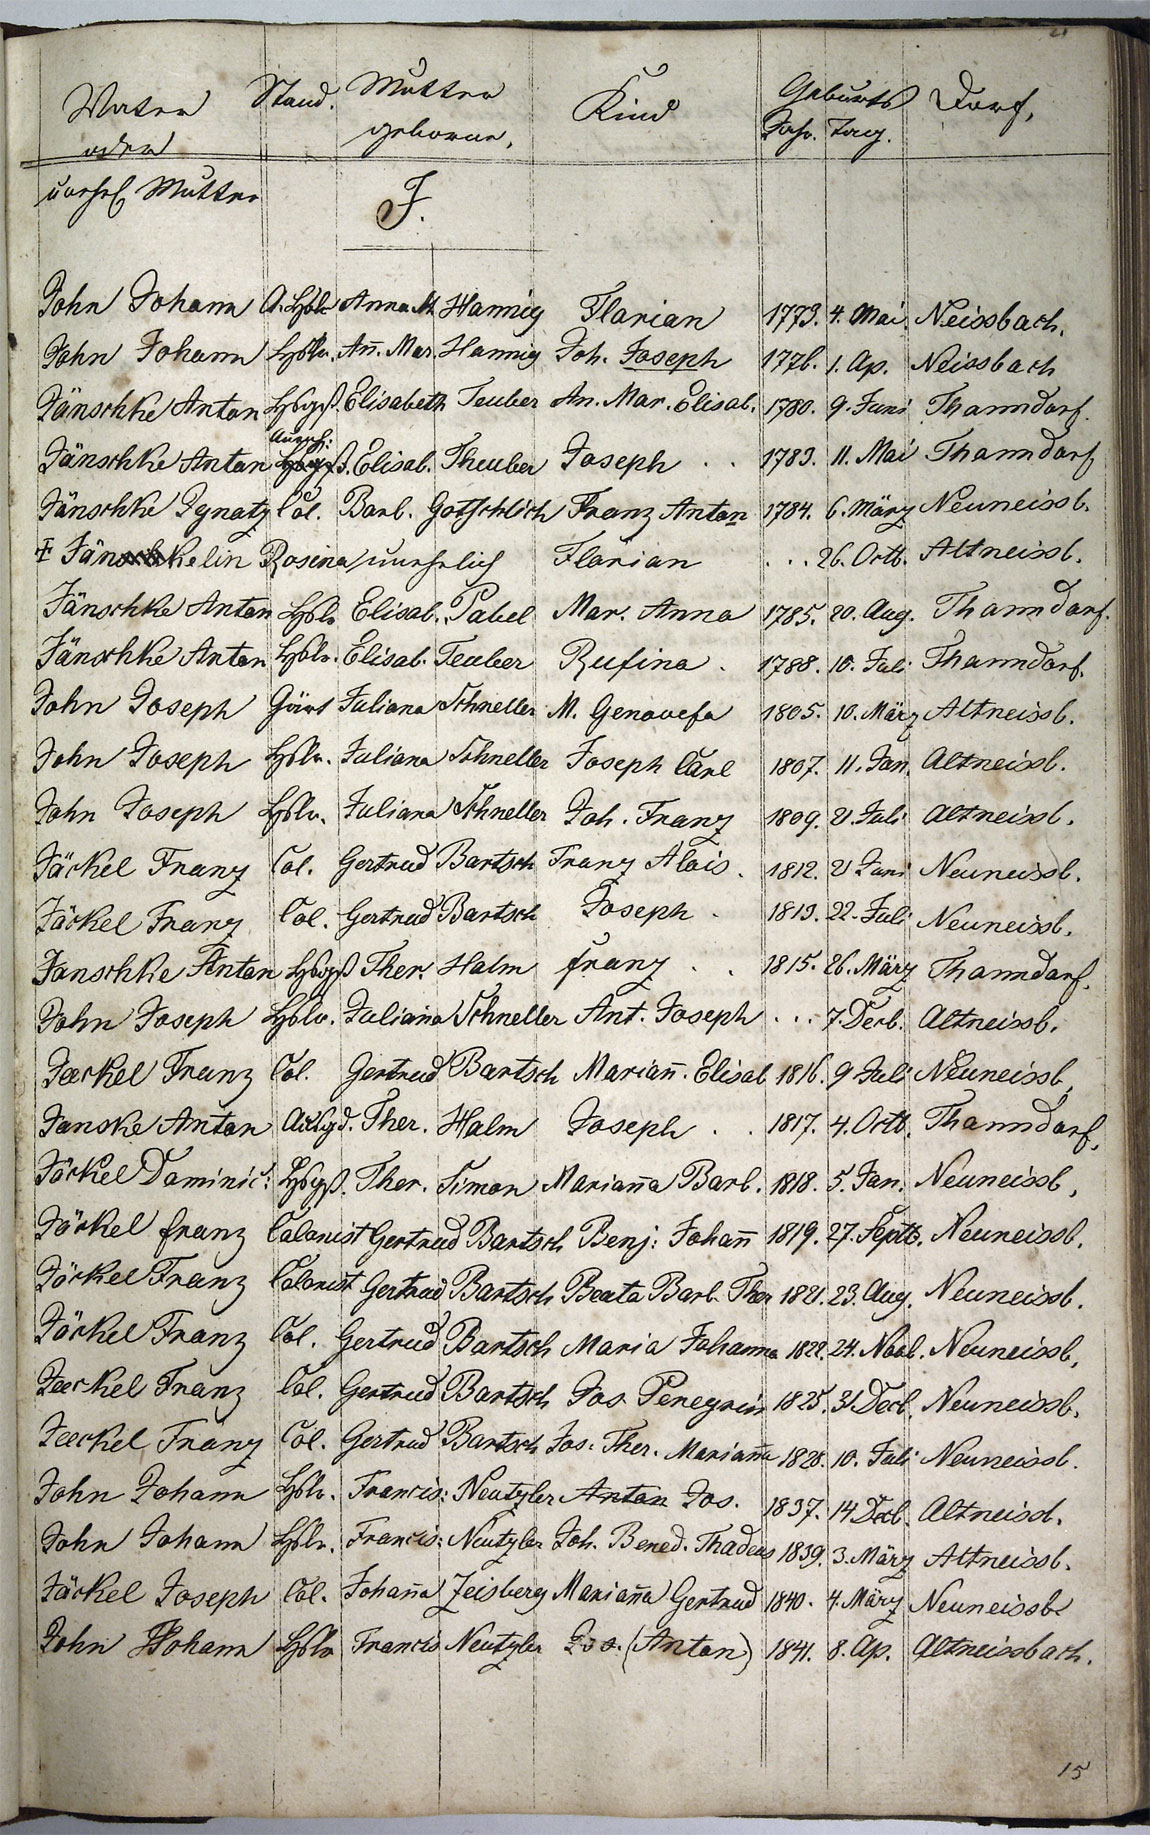 Taufregister 1770 - 1889 Seite 71